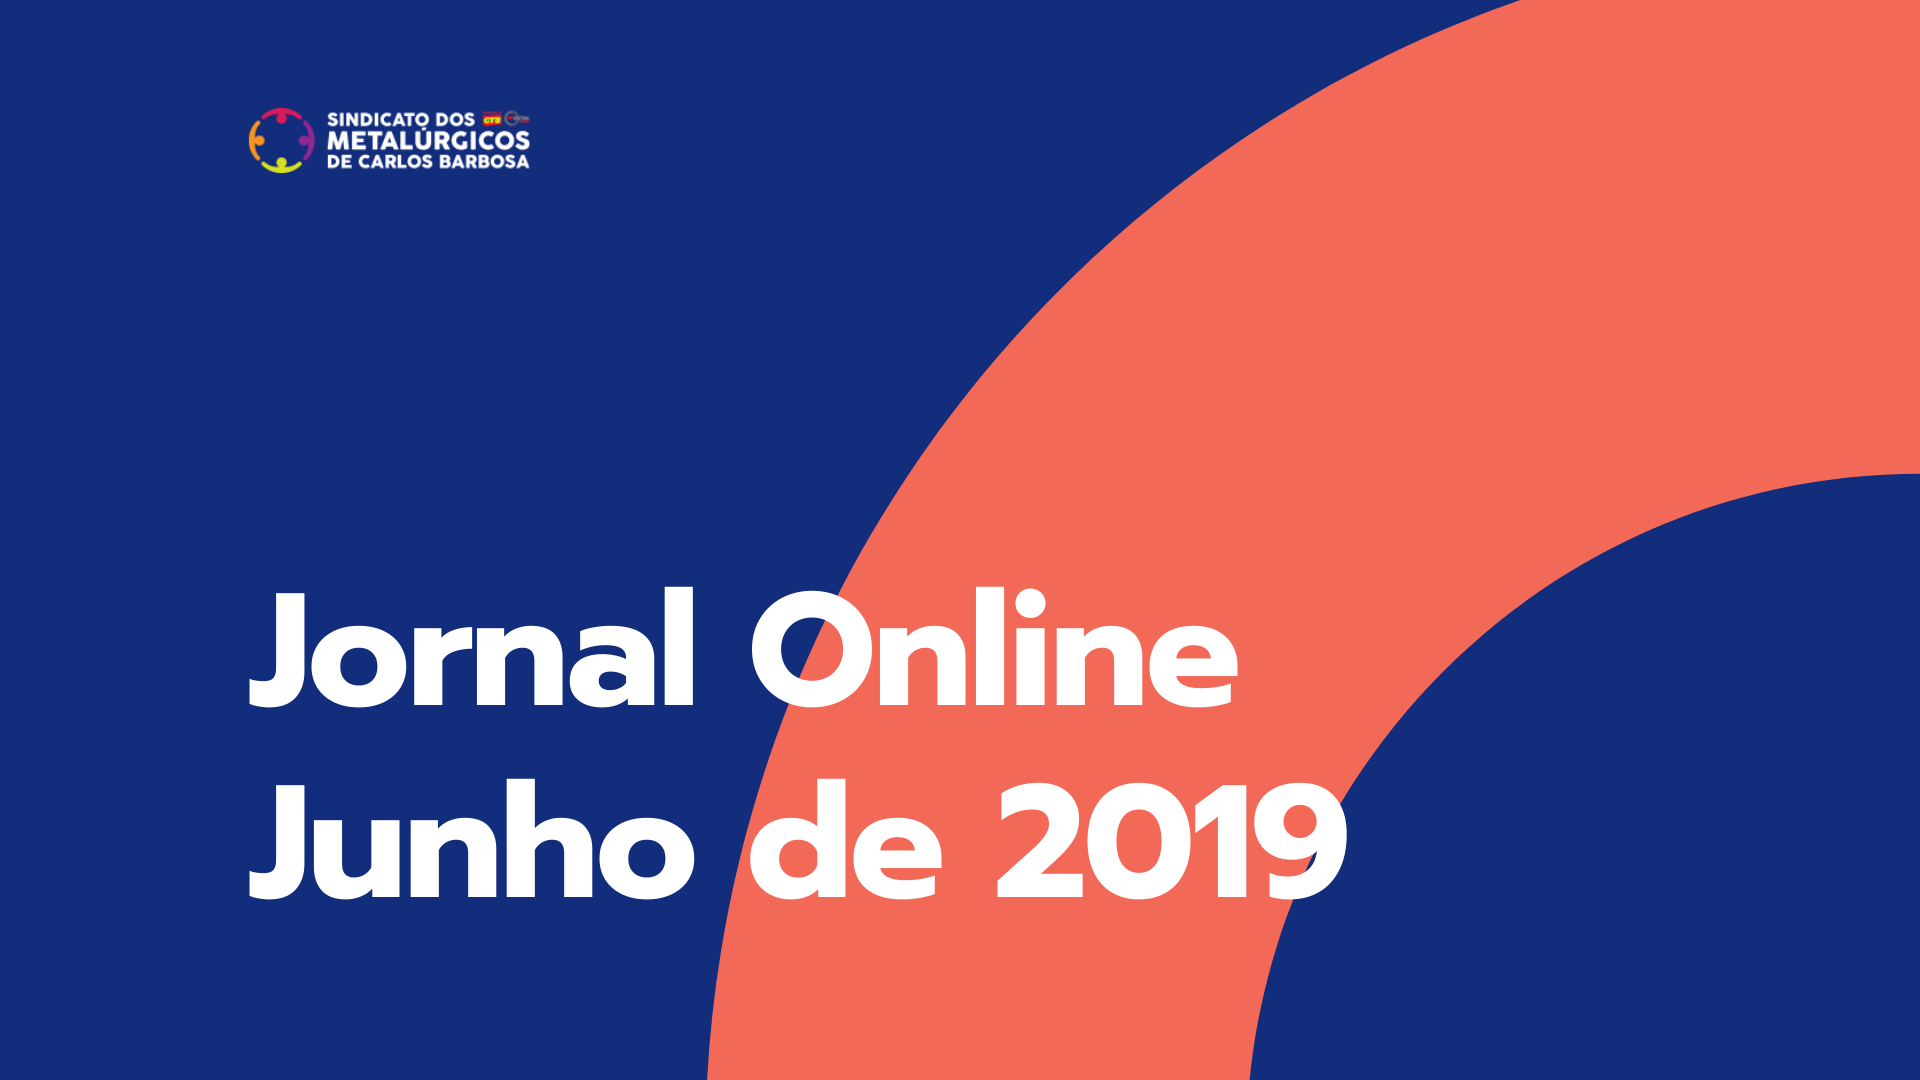 Jornal Online / Junho 2019